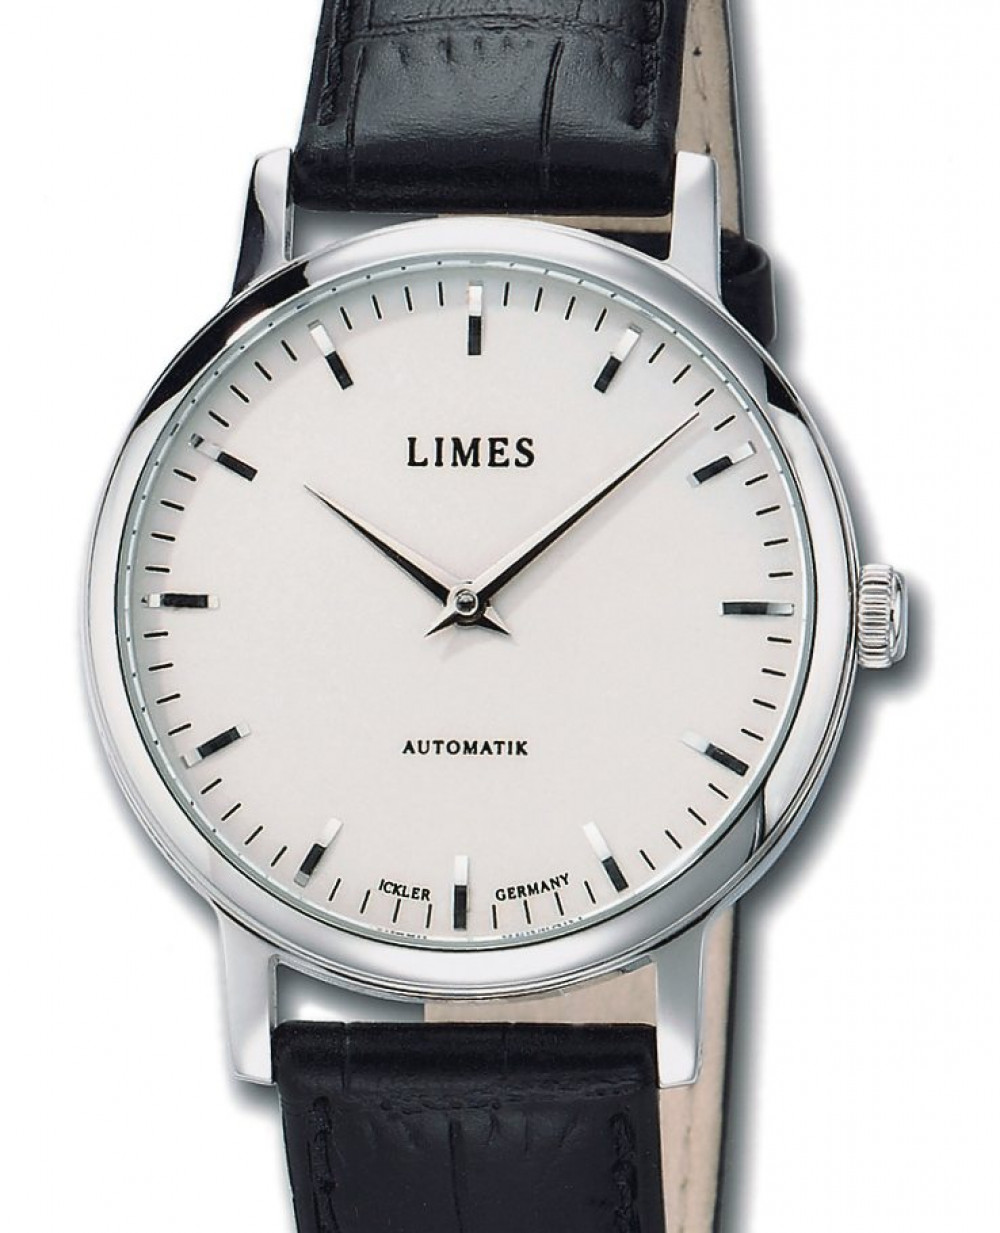 Zegarek firmy Limes, model 112 Moderne